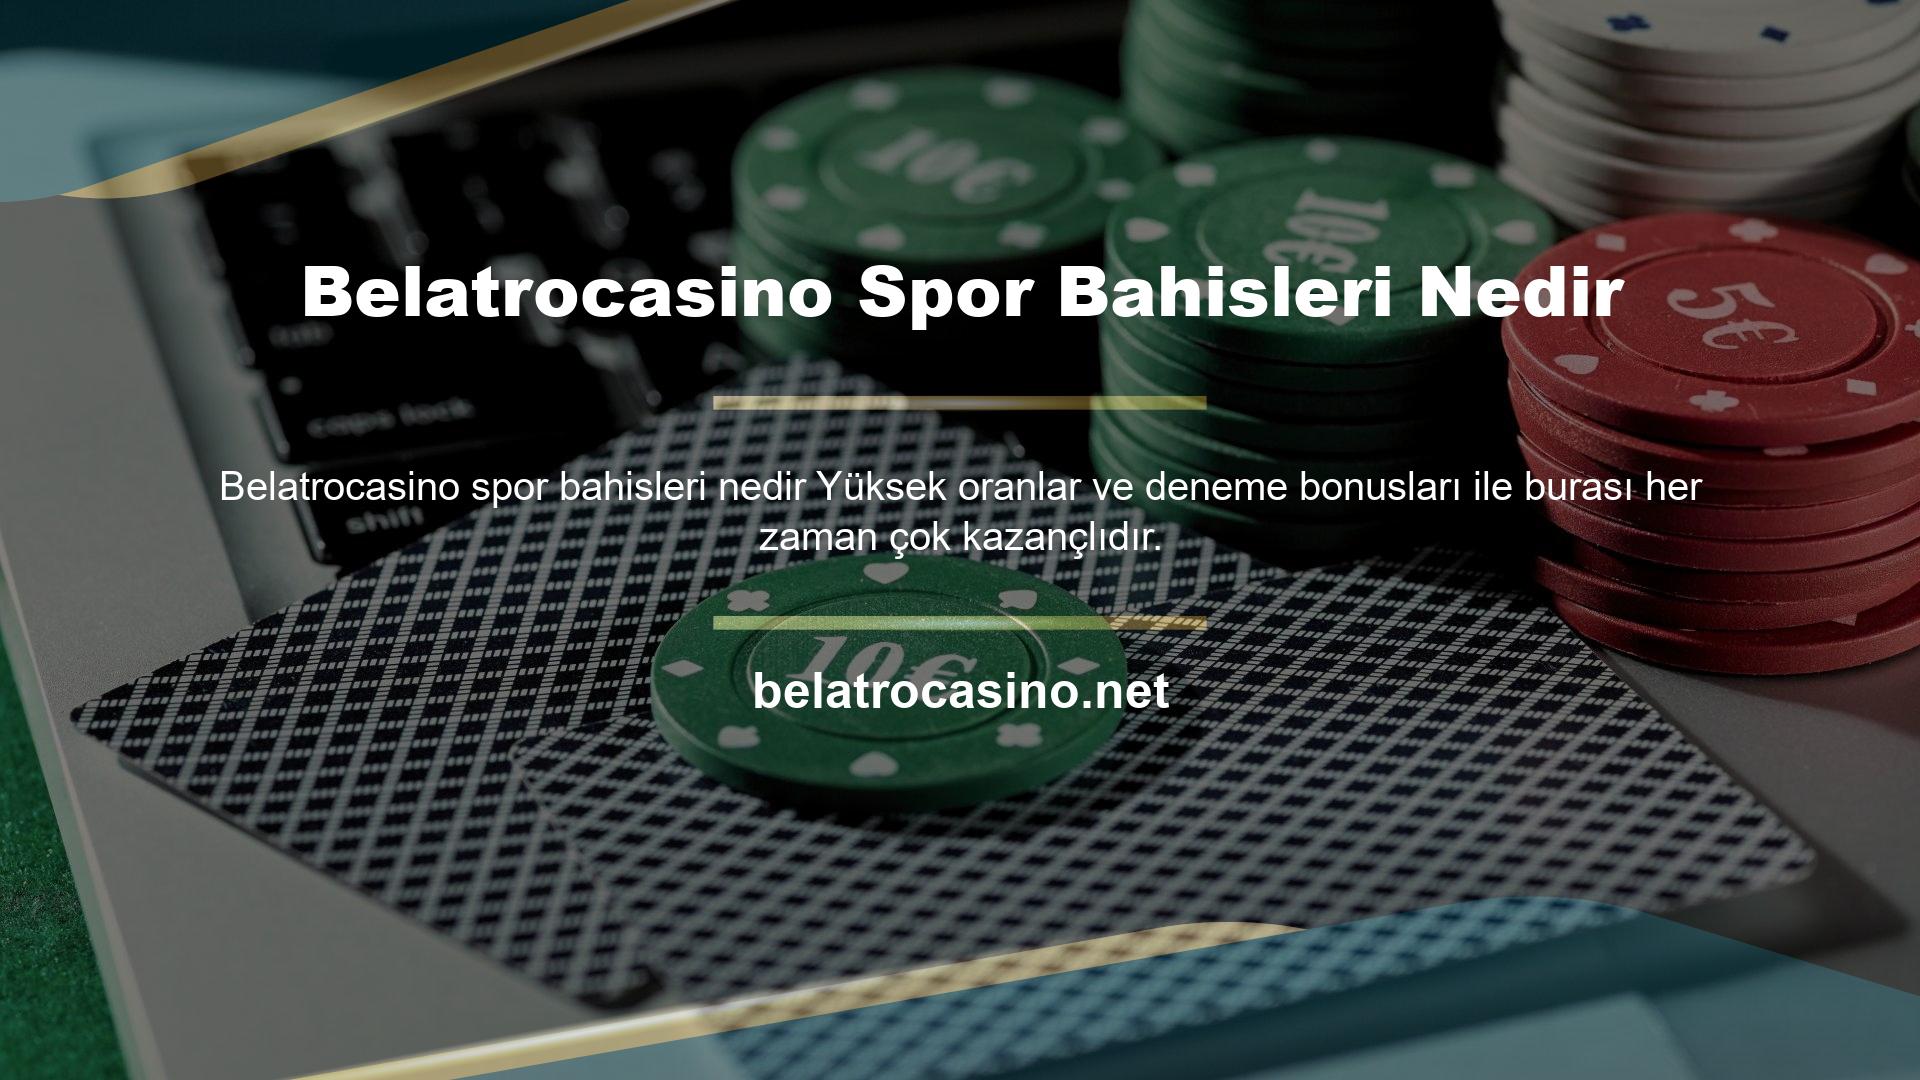 Ancak siteye yeni üye olan casino tutkunları sitenin sunduğu spor bahisleri hakkında da bilgi sahibi olmak isterler